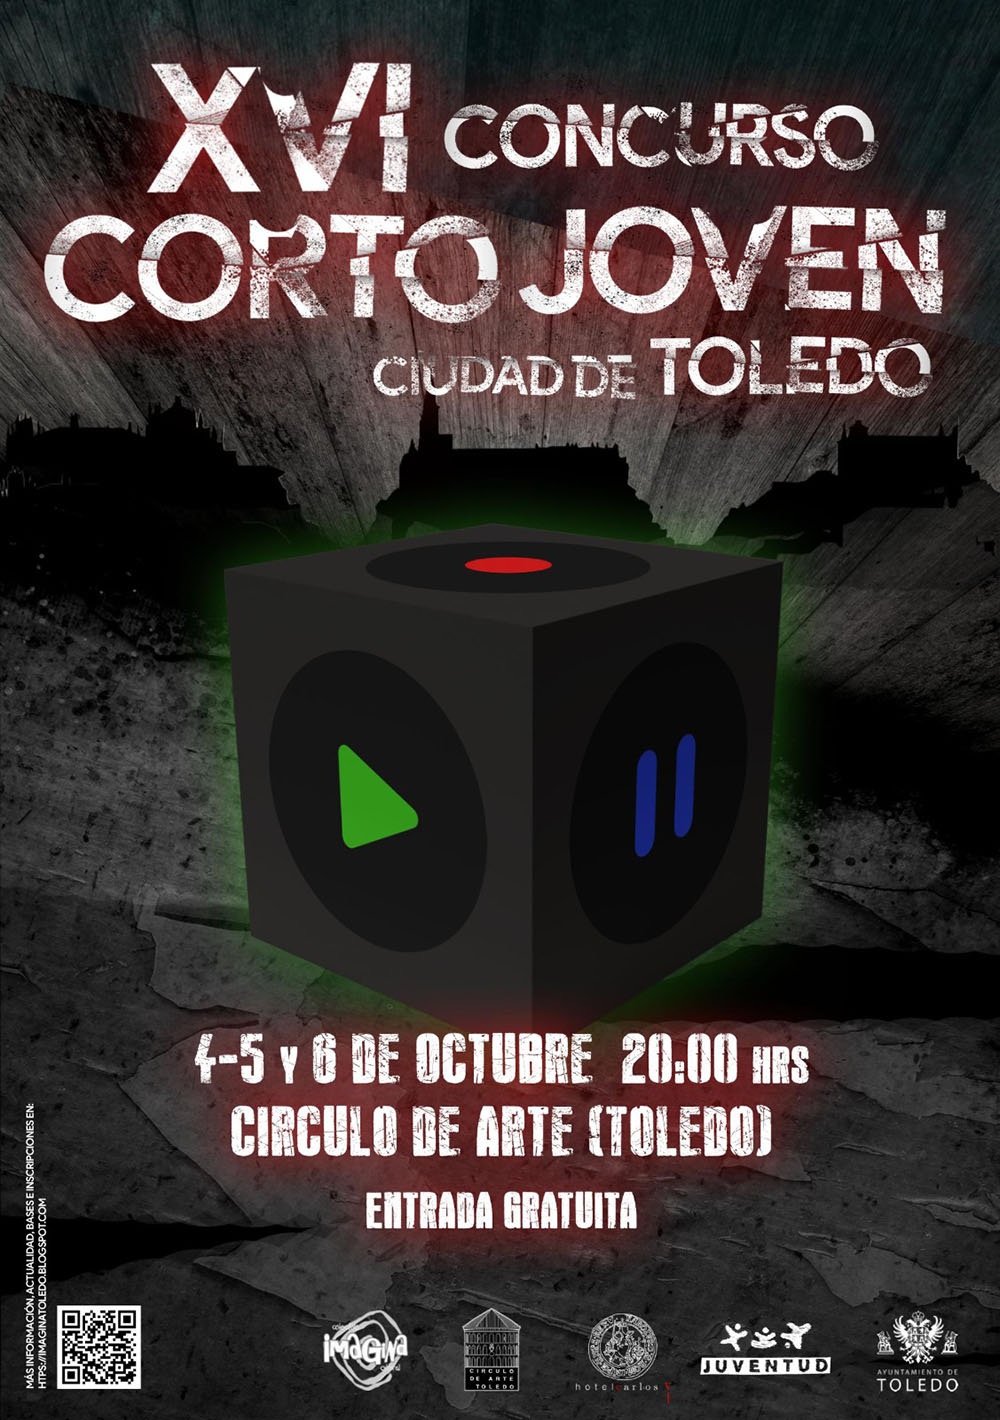 Corto-Joven Ciudad de Toledo